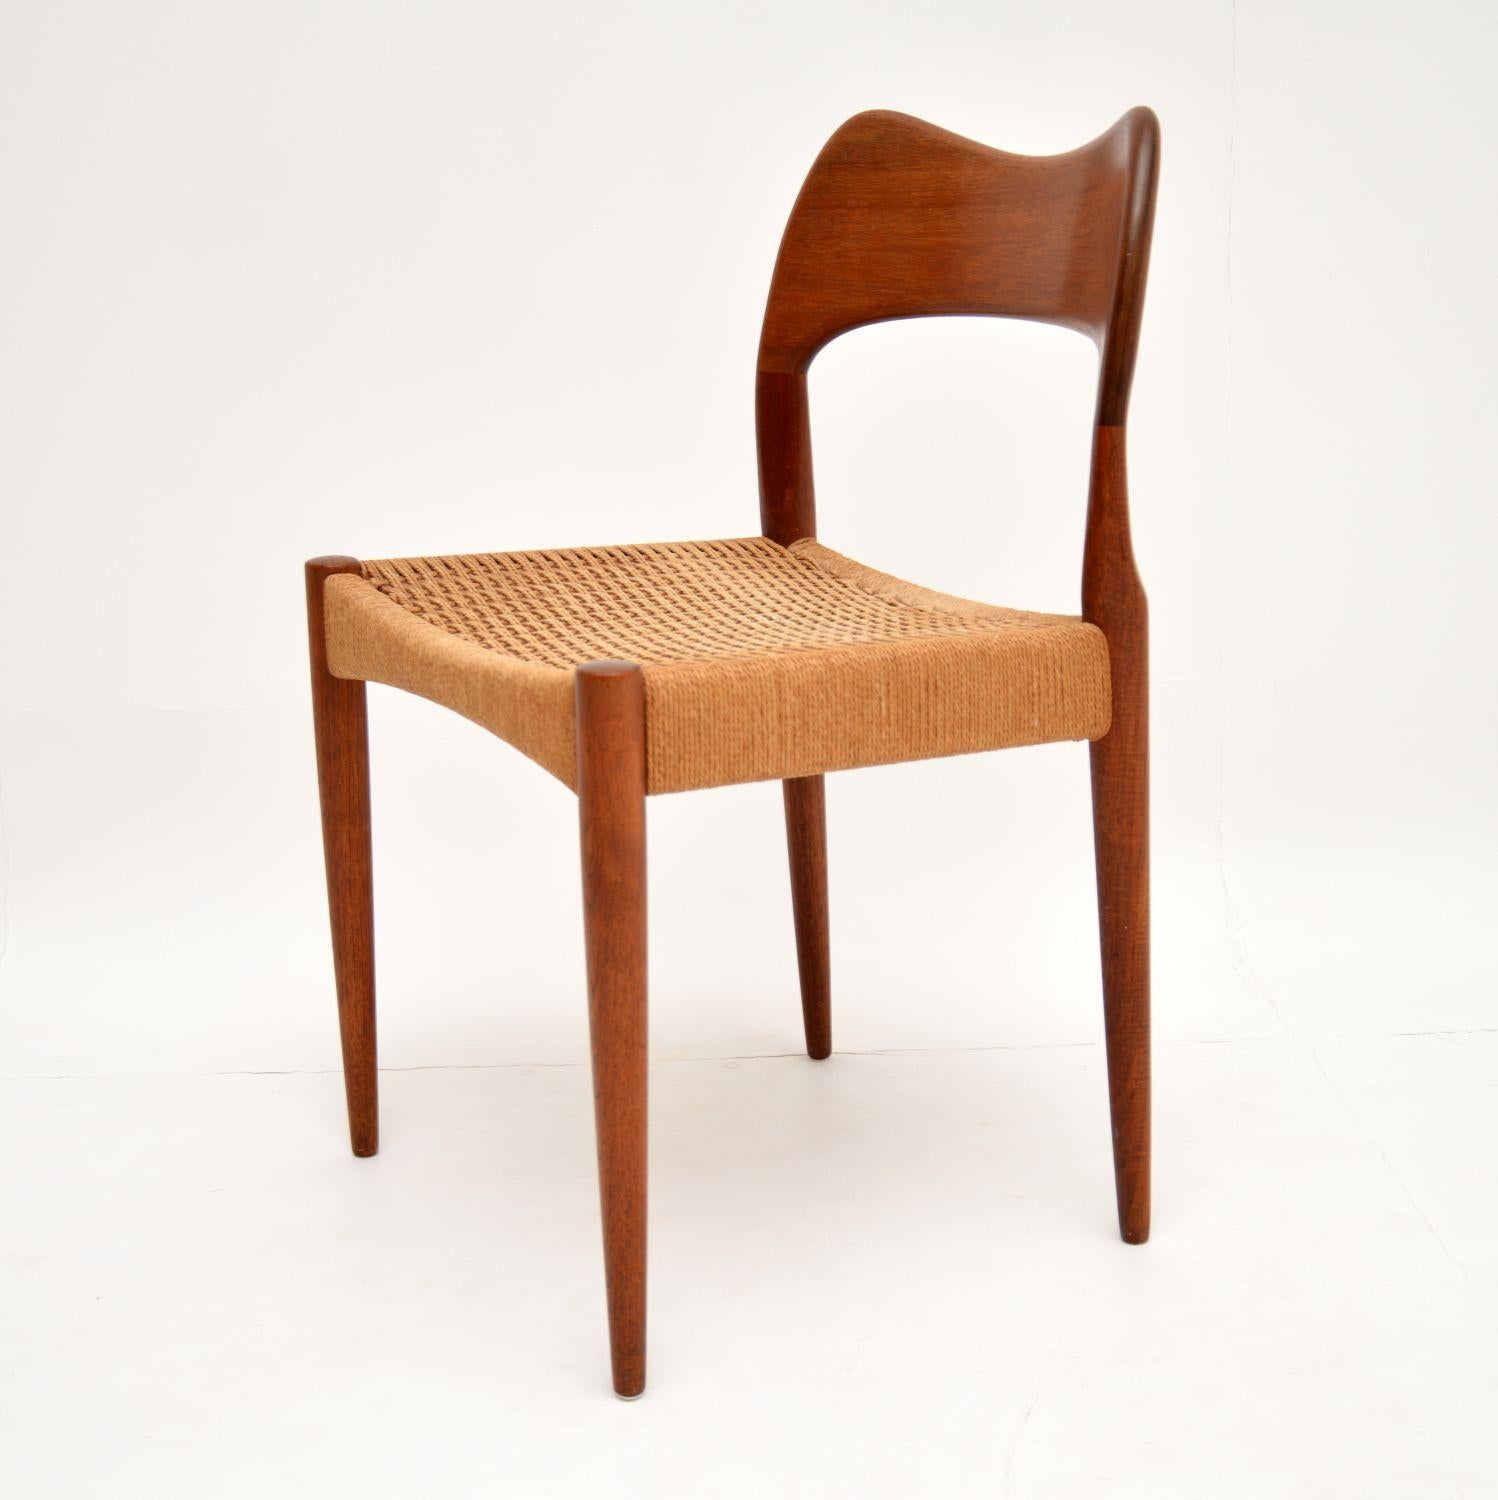 Mid-Century Modern Danish Teak Vintage Chair by Arne Hovmand-Olsen for Mogens Kold